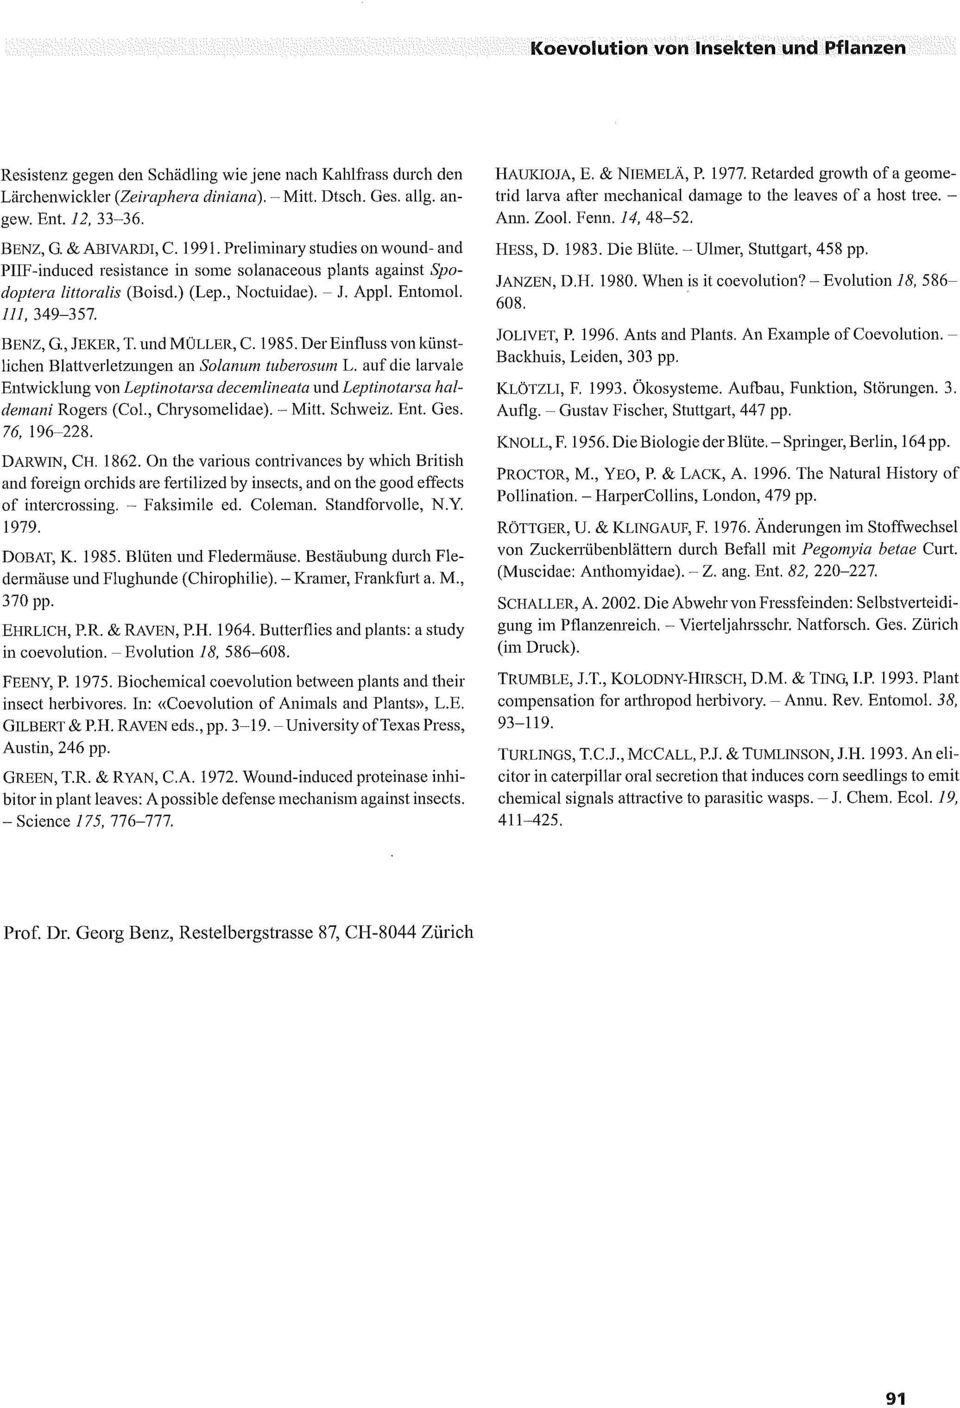 BENZ, G., JEKER, T. und MÜLLER, C. 1985. Der Einfluss von künstlichen Blattverletzungen an Solarrum tuberosum L.